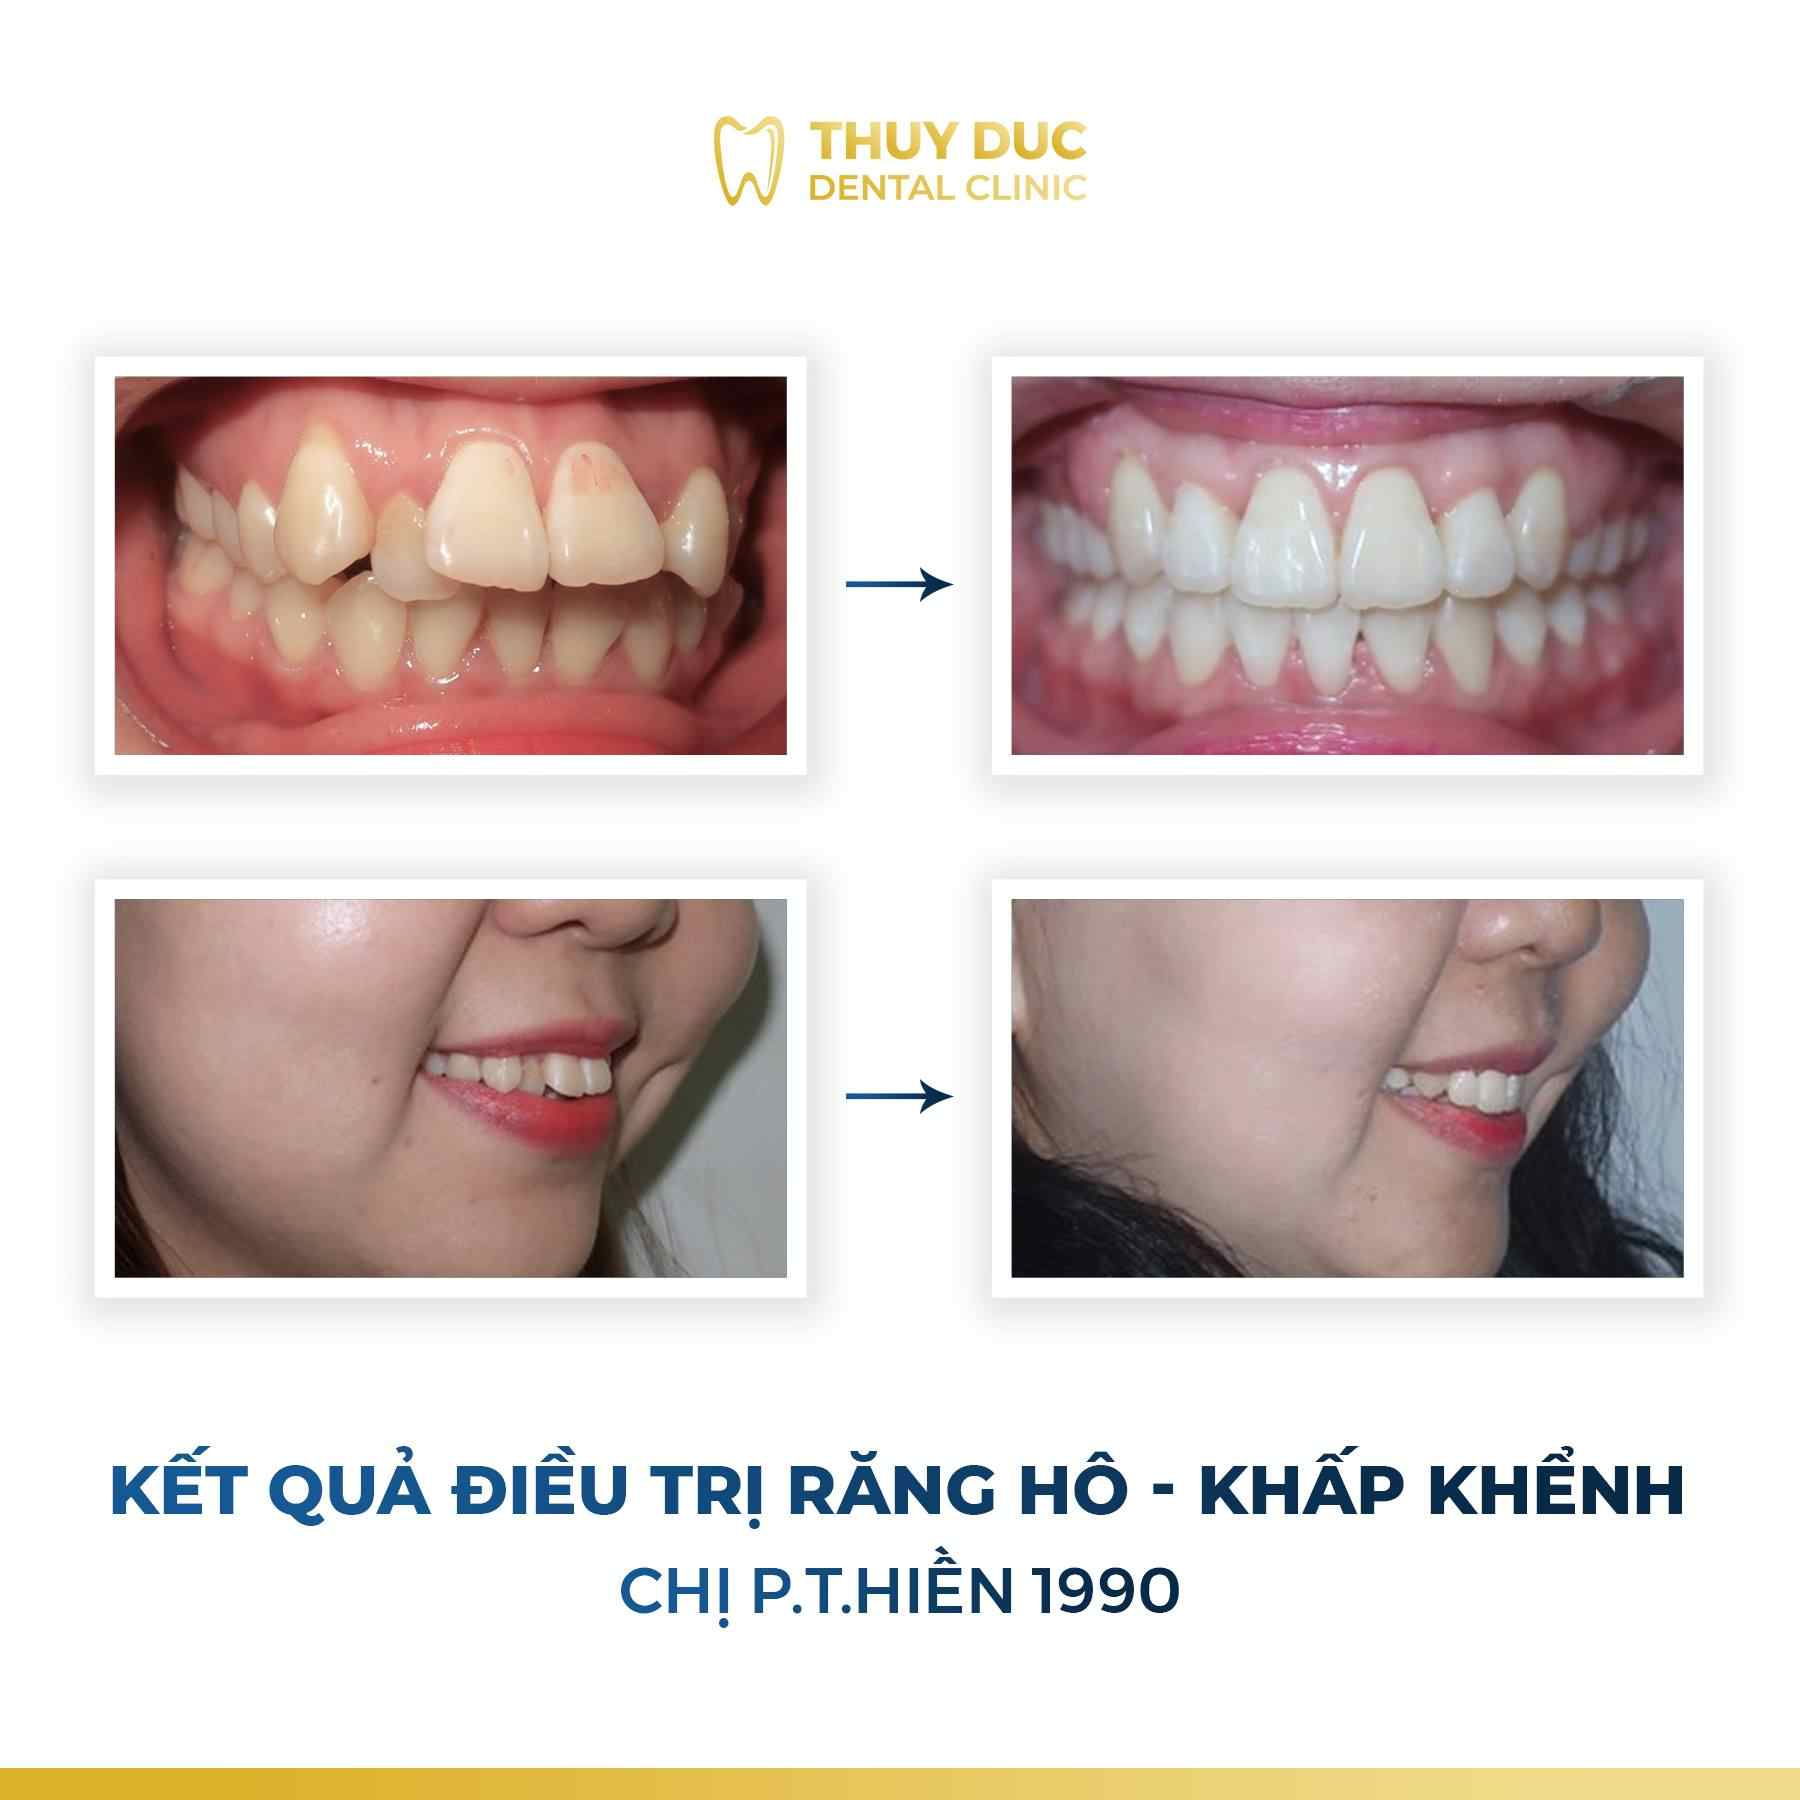 Hình ảnh răng vẩu thay đổi sau khi niềng tại Nha khoa Thúy Đức 11